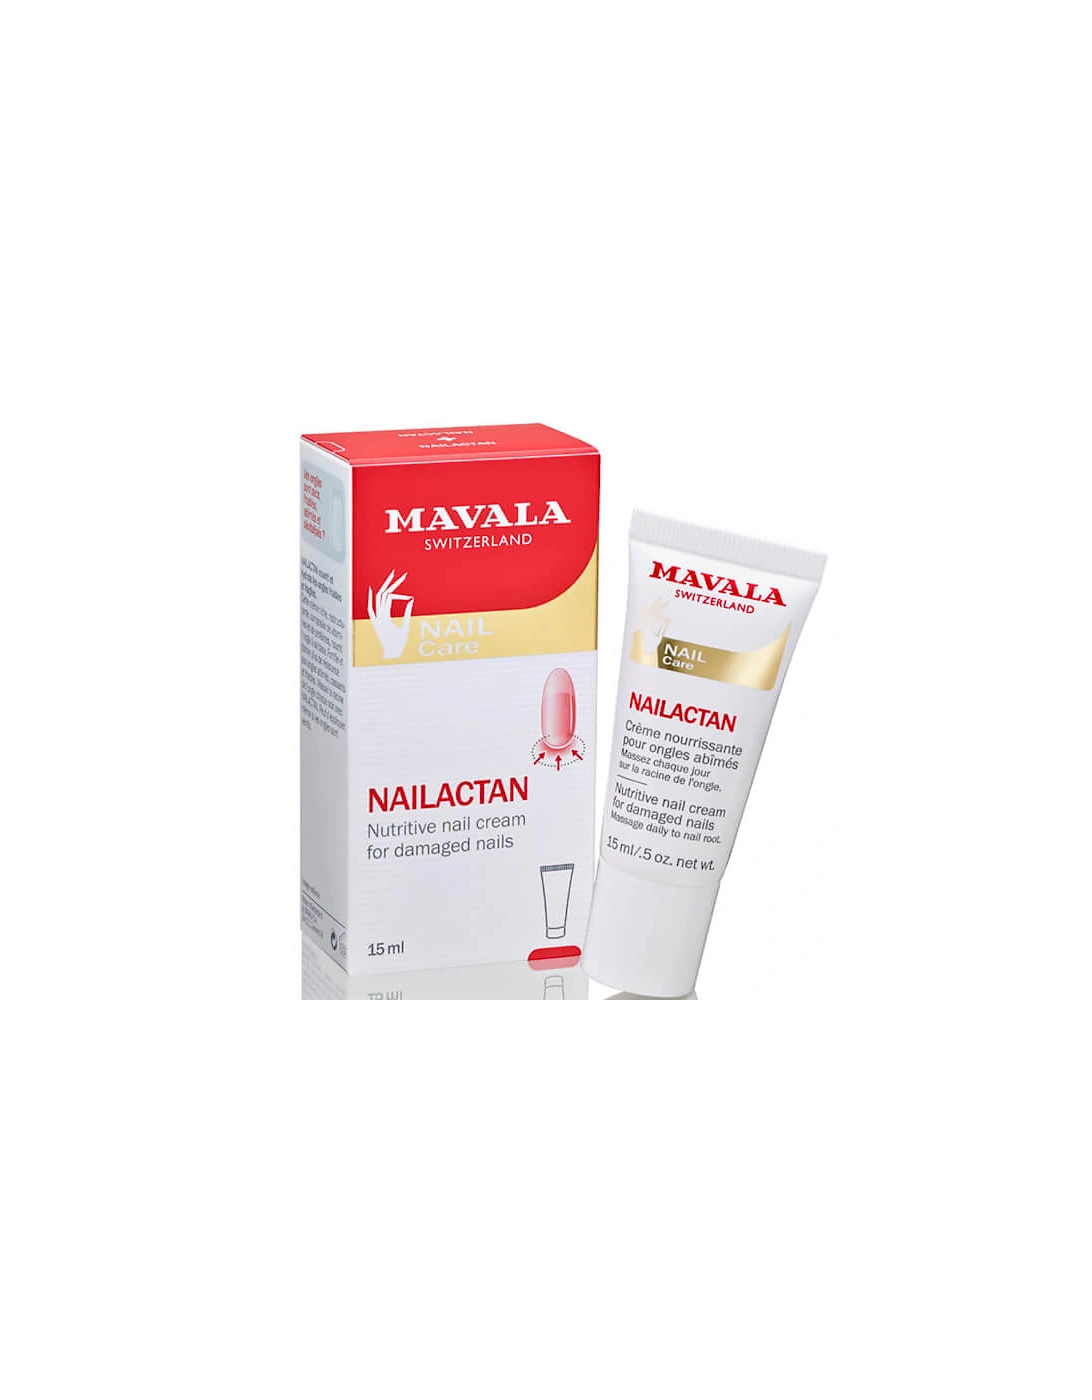 Nailactan - Nutritive Nail Cream (15ml) - Mavala, 2 of 1